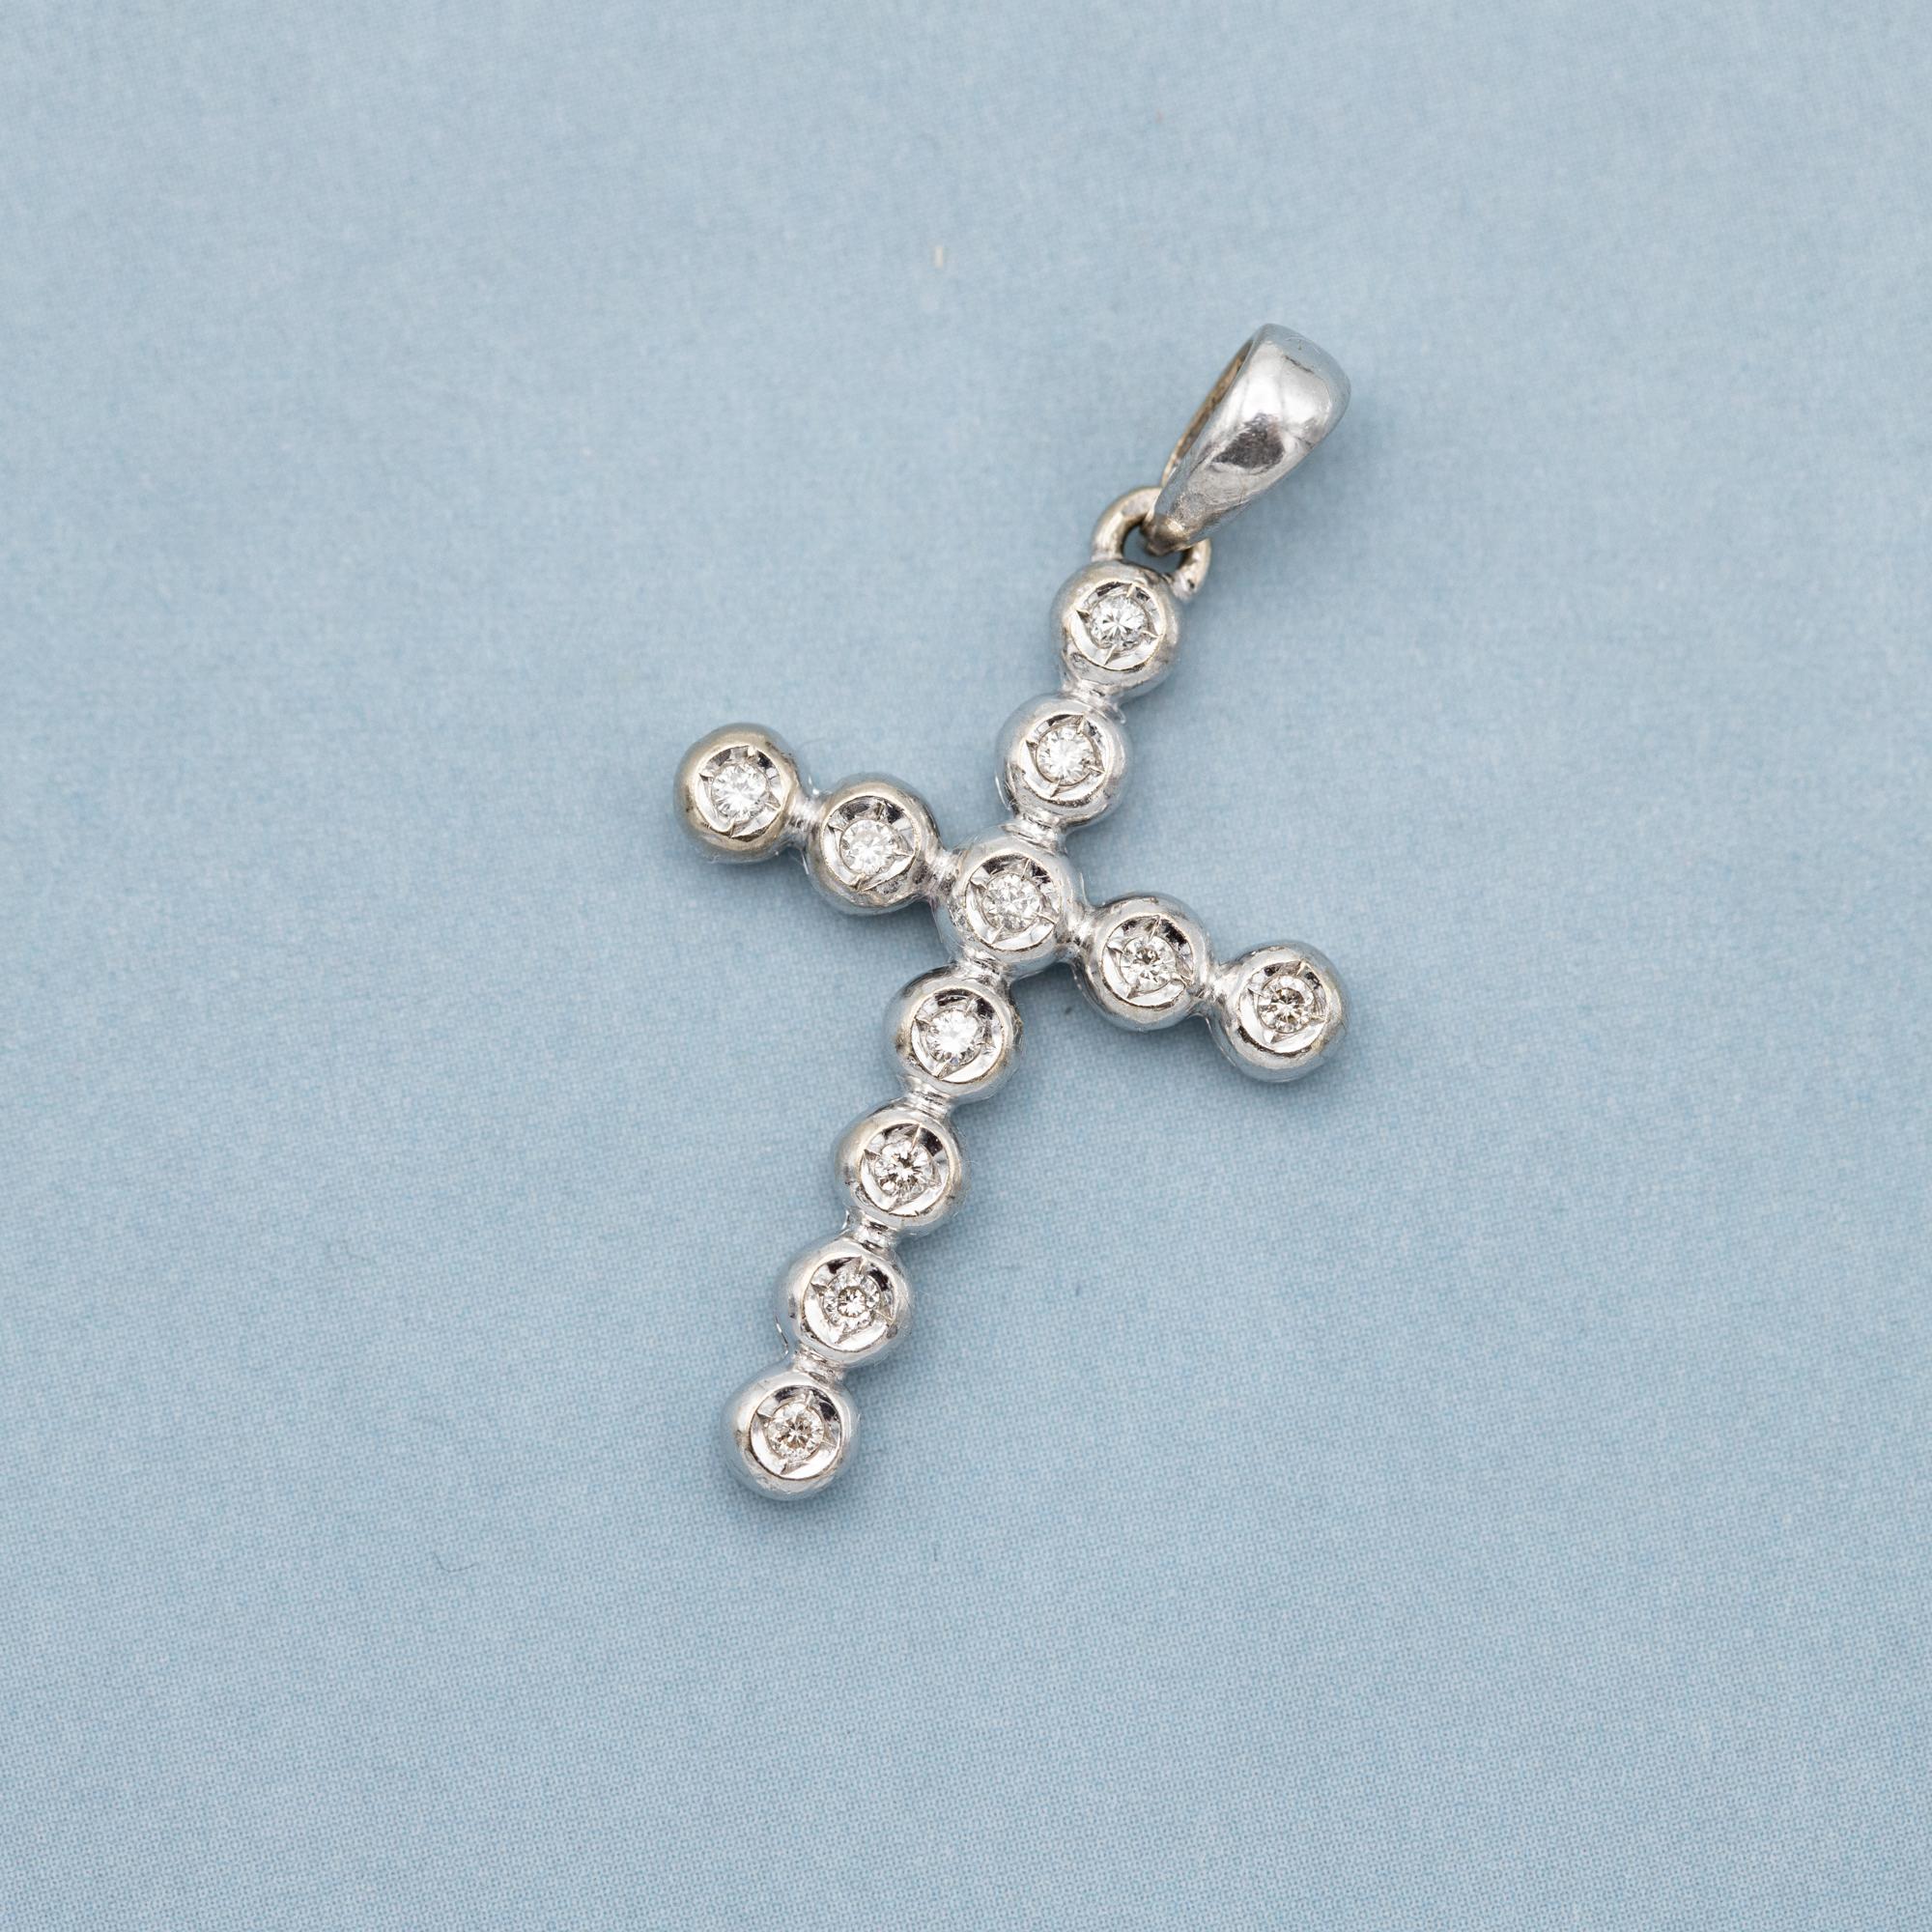 Nous vendons ce joli pendentif en forme de croix en or blanc 18 K. Cette magnifique petite breloque détaillée est recouverte de onze petits diamants de taille brillant qui totalisent 0,1ct. Ces diamants étincelants sont placés en forme de croix.

Il